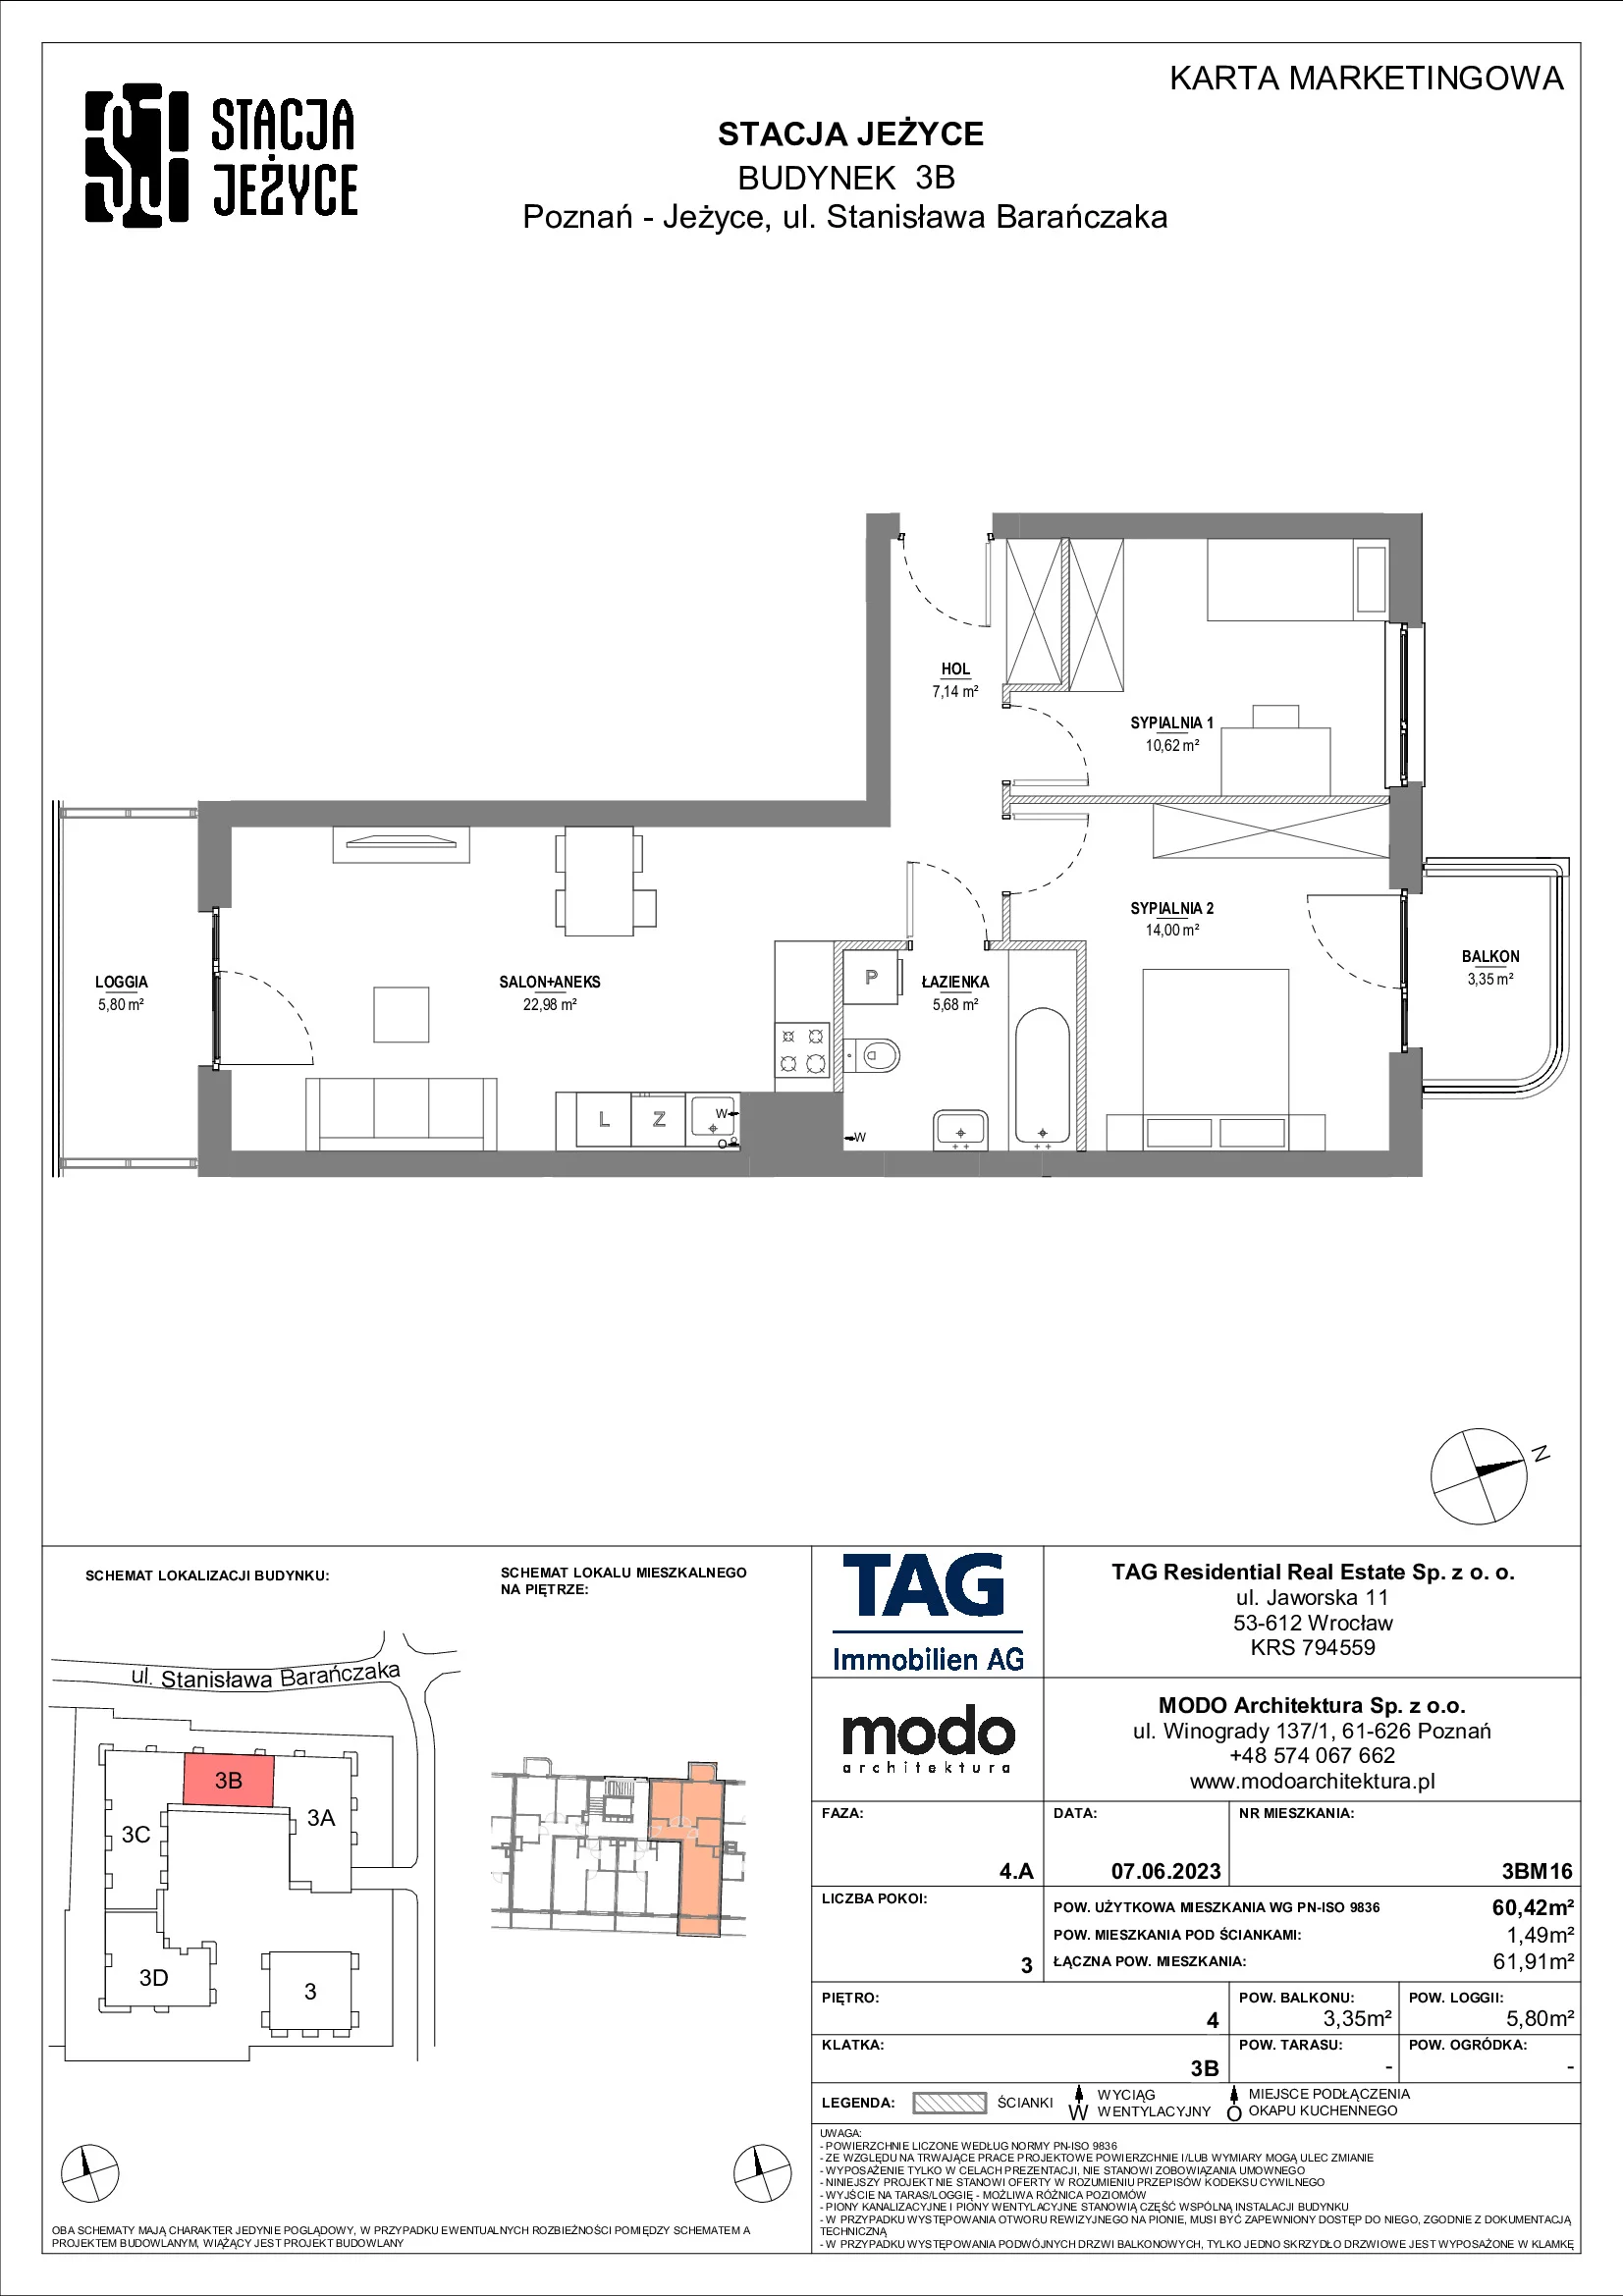 Mieszkanie 60,42 m², piętro 4, oferta nr 3BM16, Stacja Jeżyce, Poznań, Jeżyce, Jeżyce, ul. Stanisława Barańczaka 3